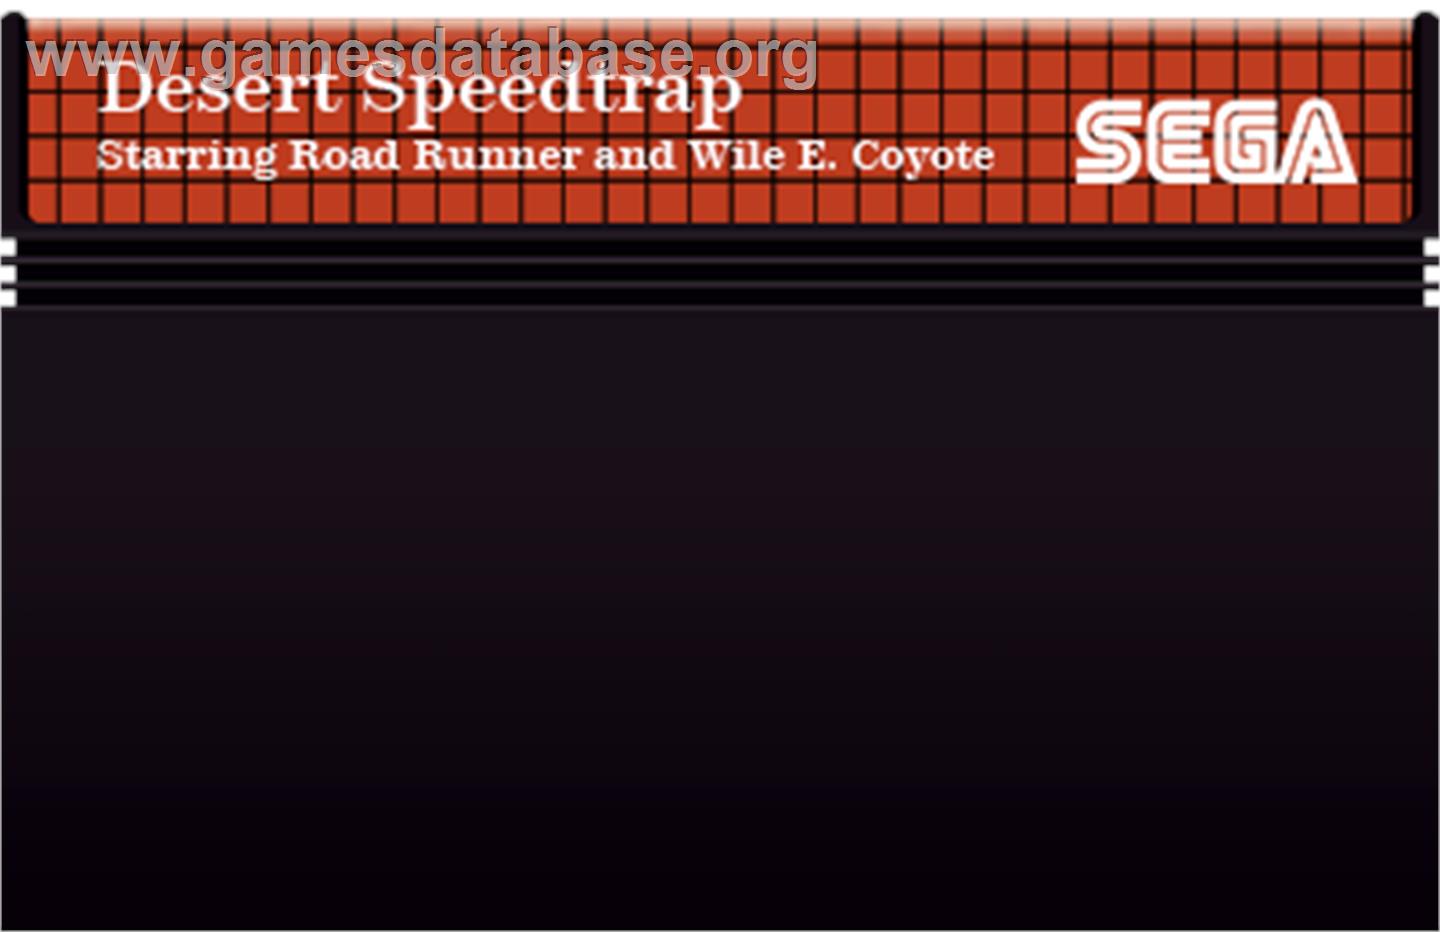 Desert Speedtrap starring Road Runner and Wile E. Coyote - Sega Master System - Artwork - Cartridge